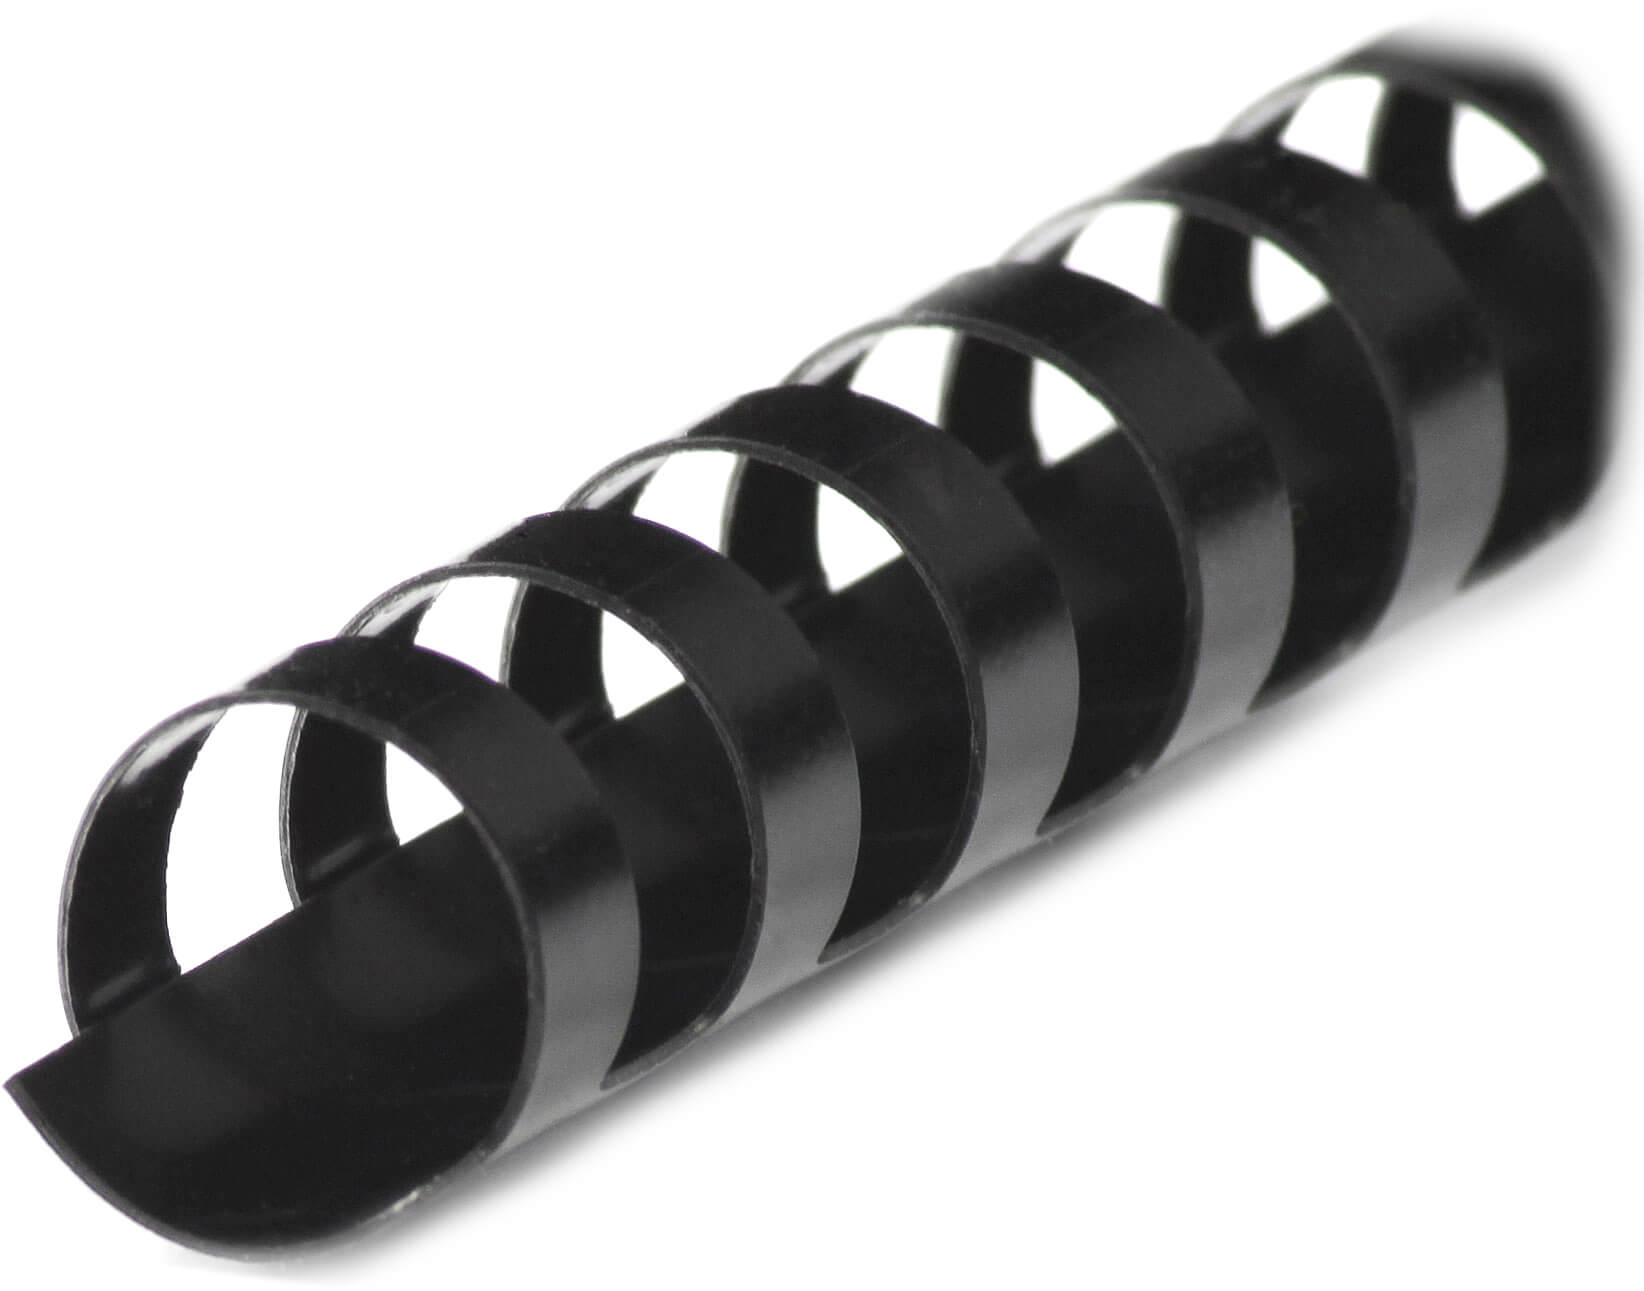 Plastikbinderücken für A4 mit 21 Ringen, Ø 14 mm, schwarz | Bestnr. BRP140-SW